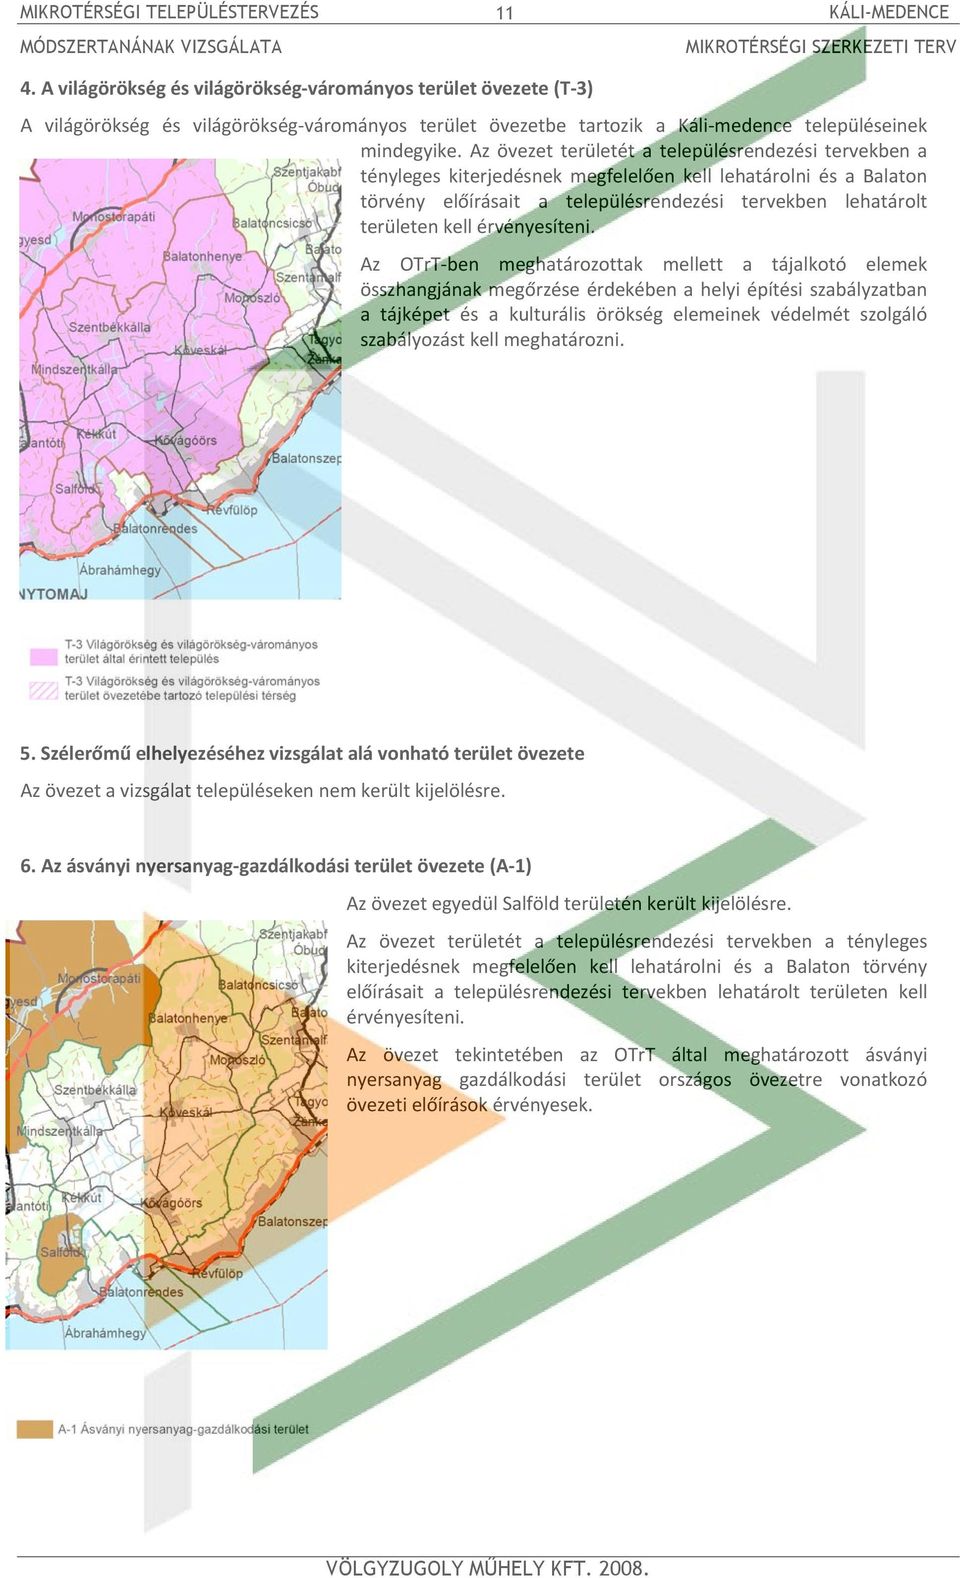 Az övezet területét a településrendezési tervekben a tényleges kiterjedésnek megfelelően kell lehatárolni és a Balaton törvény előírásait a településrendezési tervekben lehatárolt területen kell